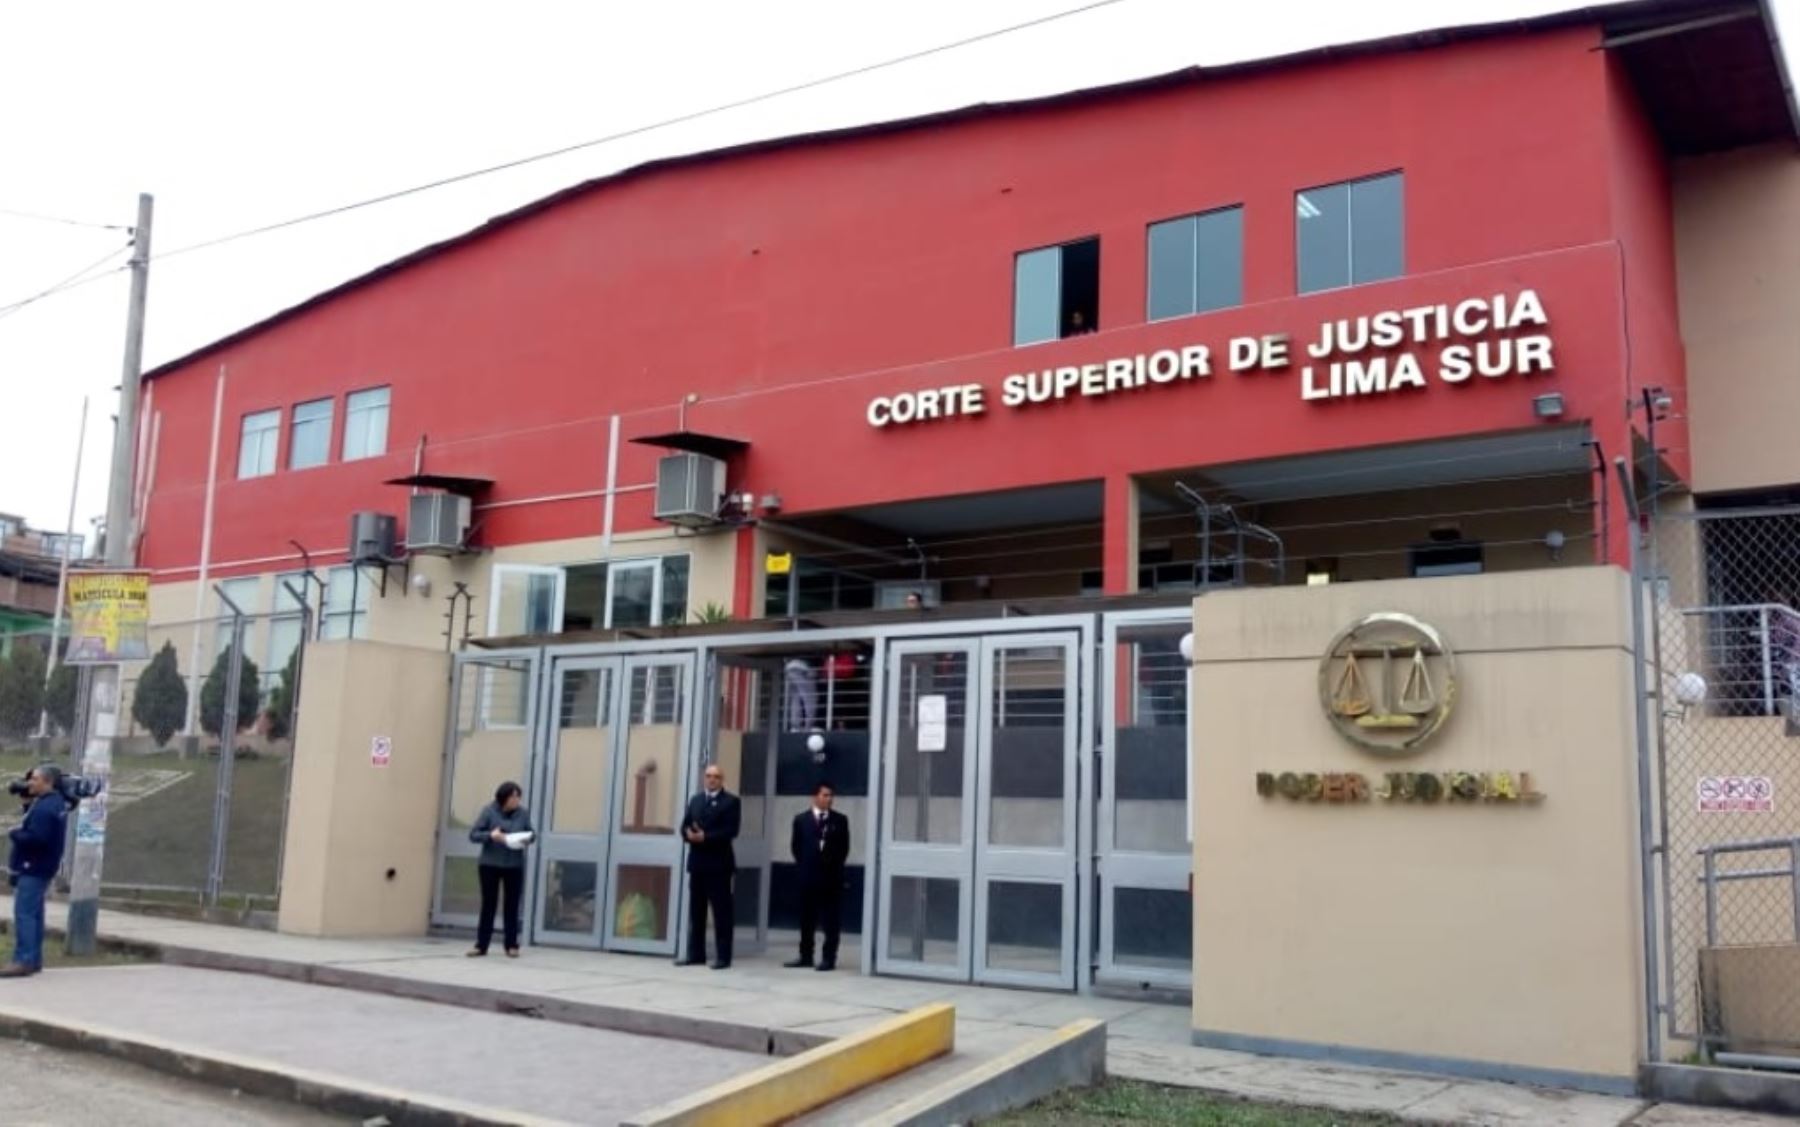 Corte Superior de Justicia de Lima Sur